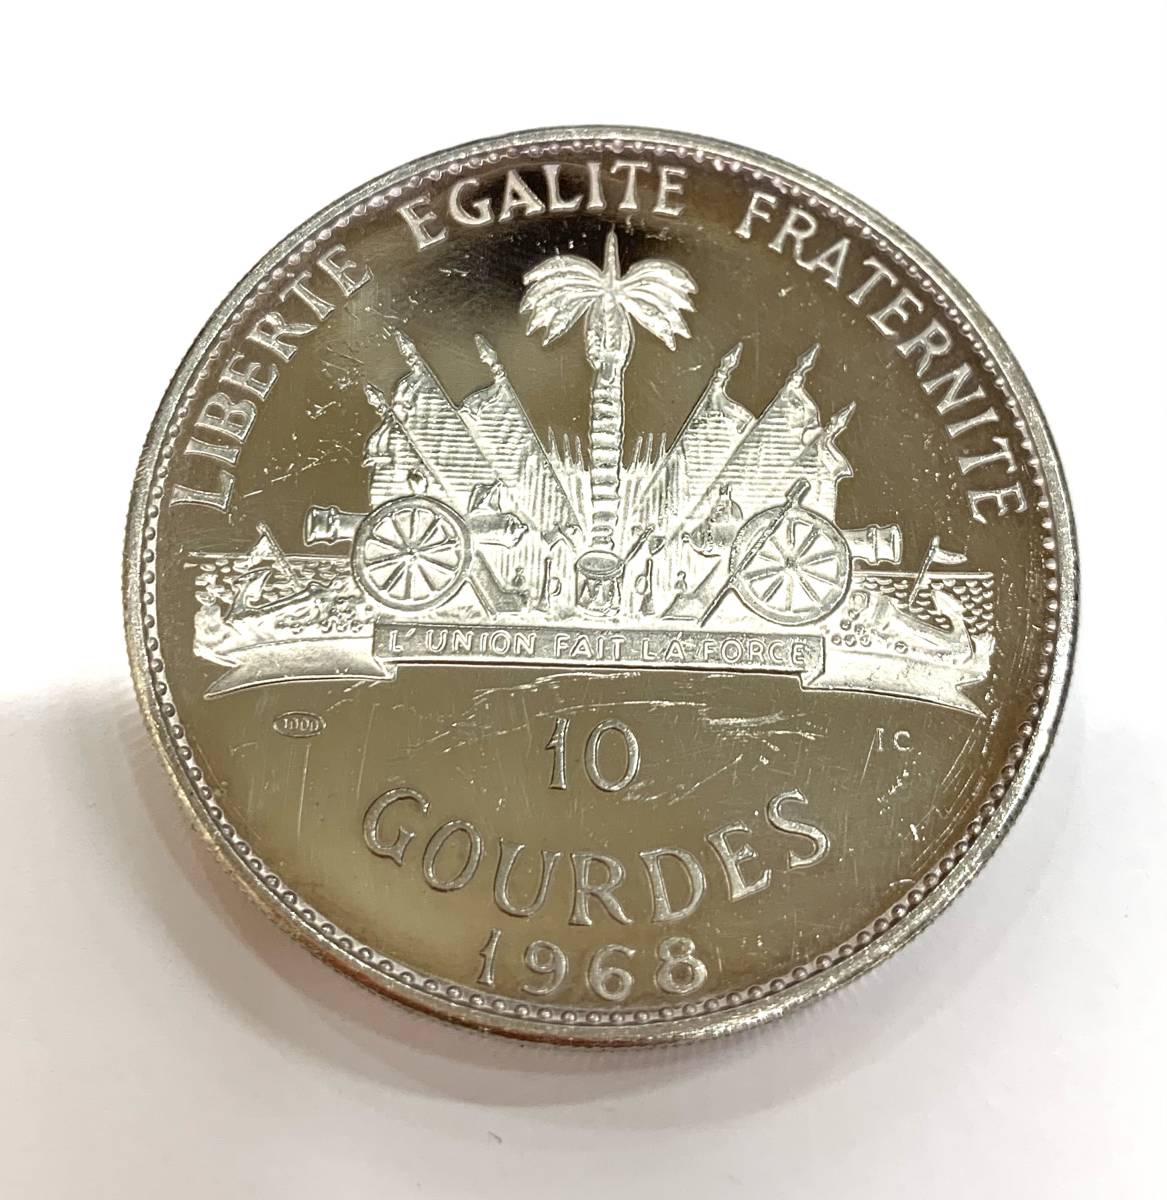 ハイチ共和国 革命10周年記念プルーフ銀貨 10グールド 1968年-